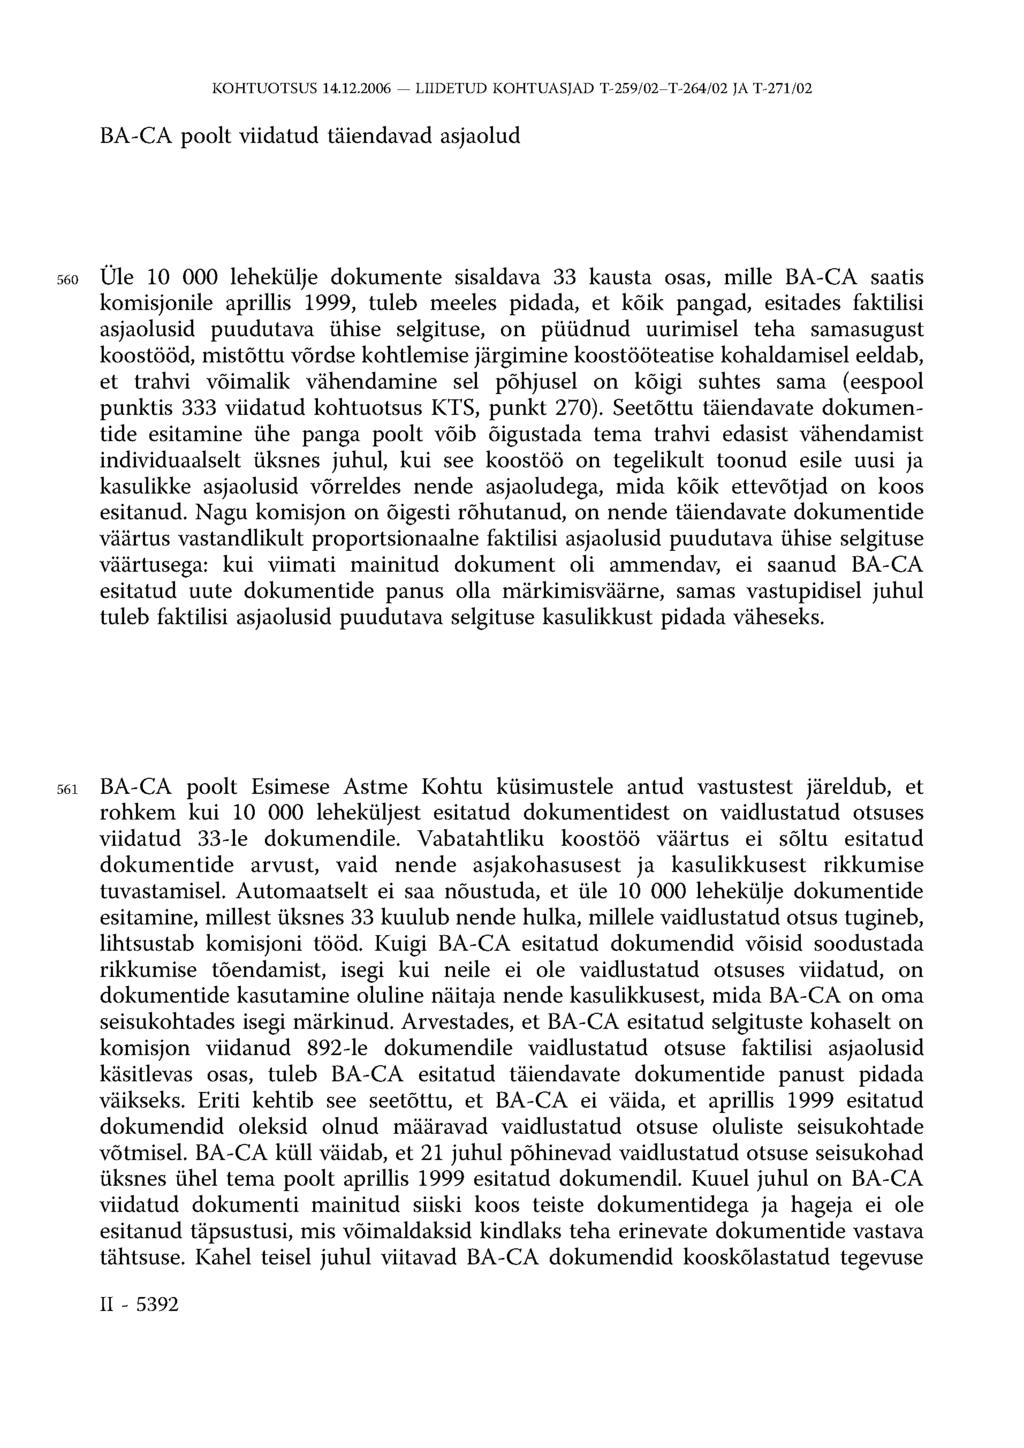 BA-CA poolt viidatud täiendavad asjaolud 560 Üle 10 000 lehekülje dokumente sisaldava 33 kausta osas, mille BA-CA saatis komisjonile aprillis 1999, tuleb meeles pidada, et kõik pangad, esitades